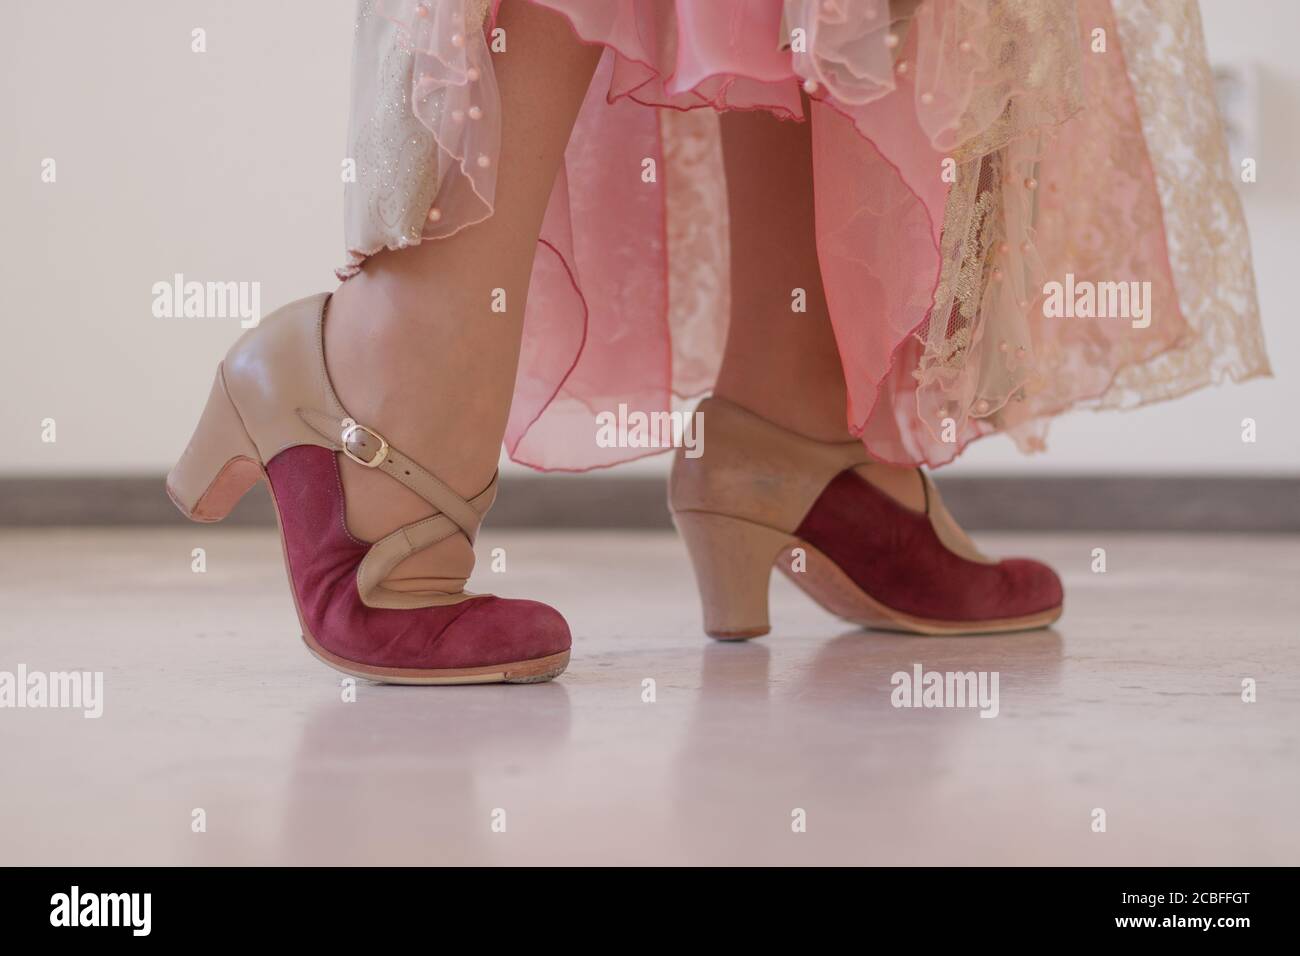 Chaussures roses et beiges pour danser le flamenco sur les jambes des femmes. Gros plan. Banque D'Images